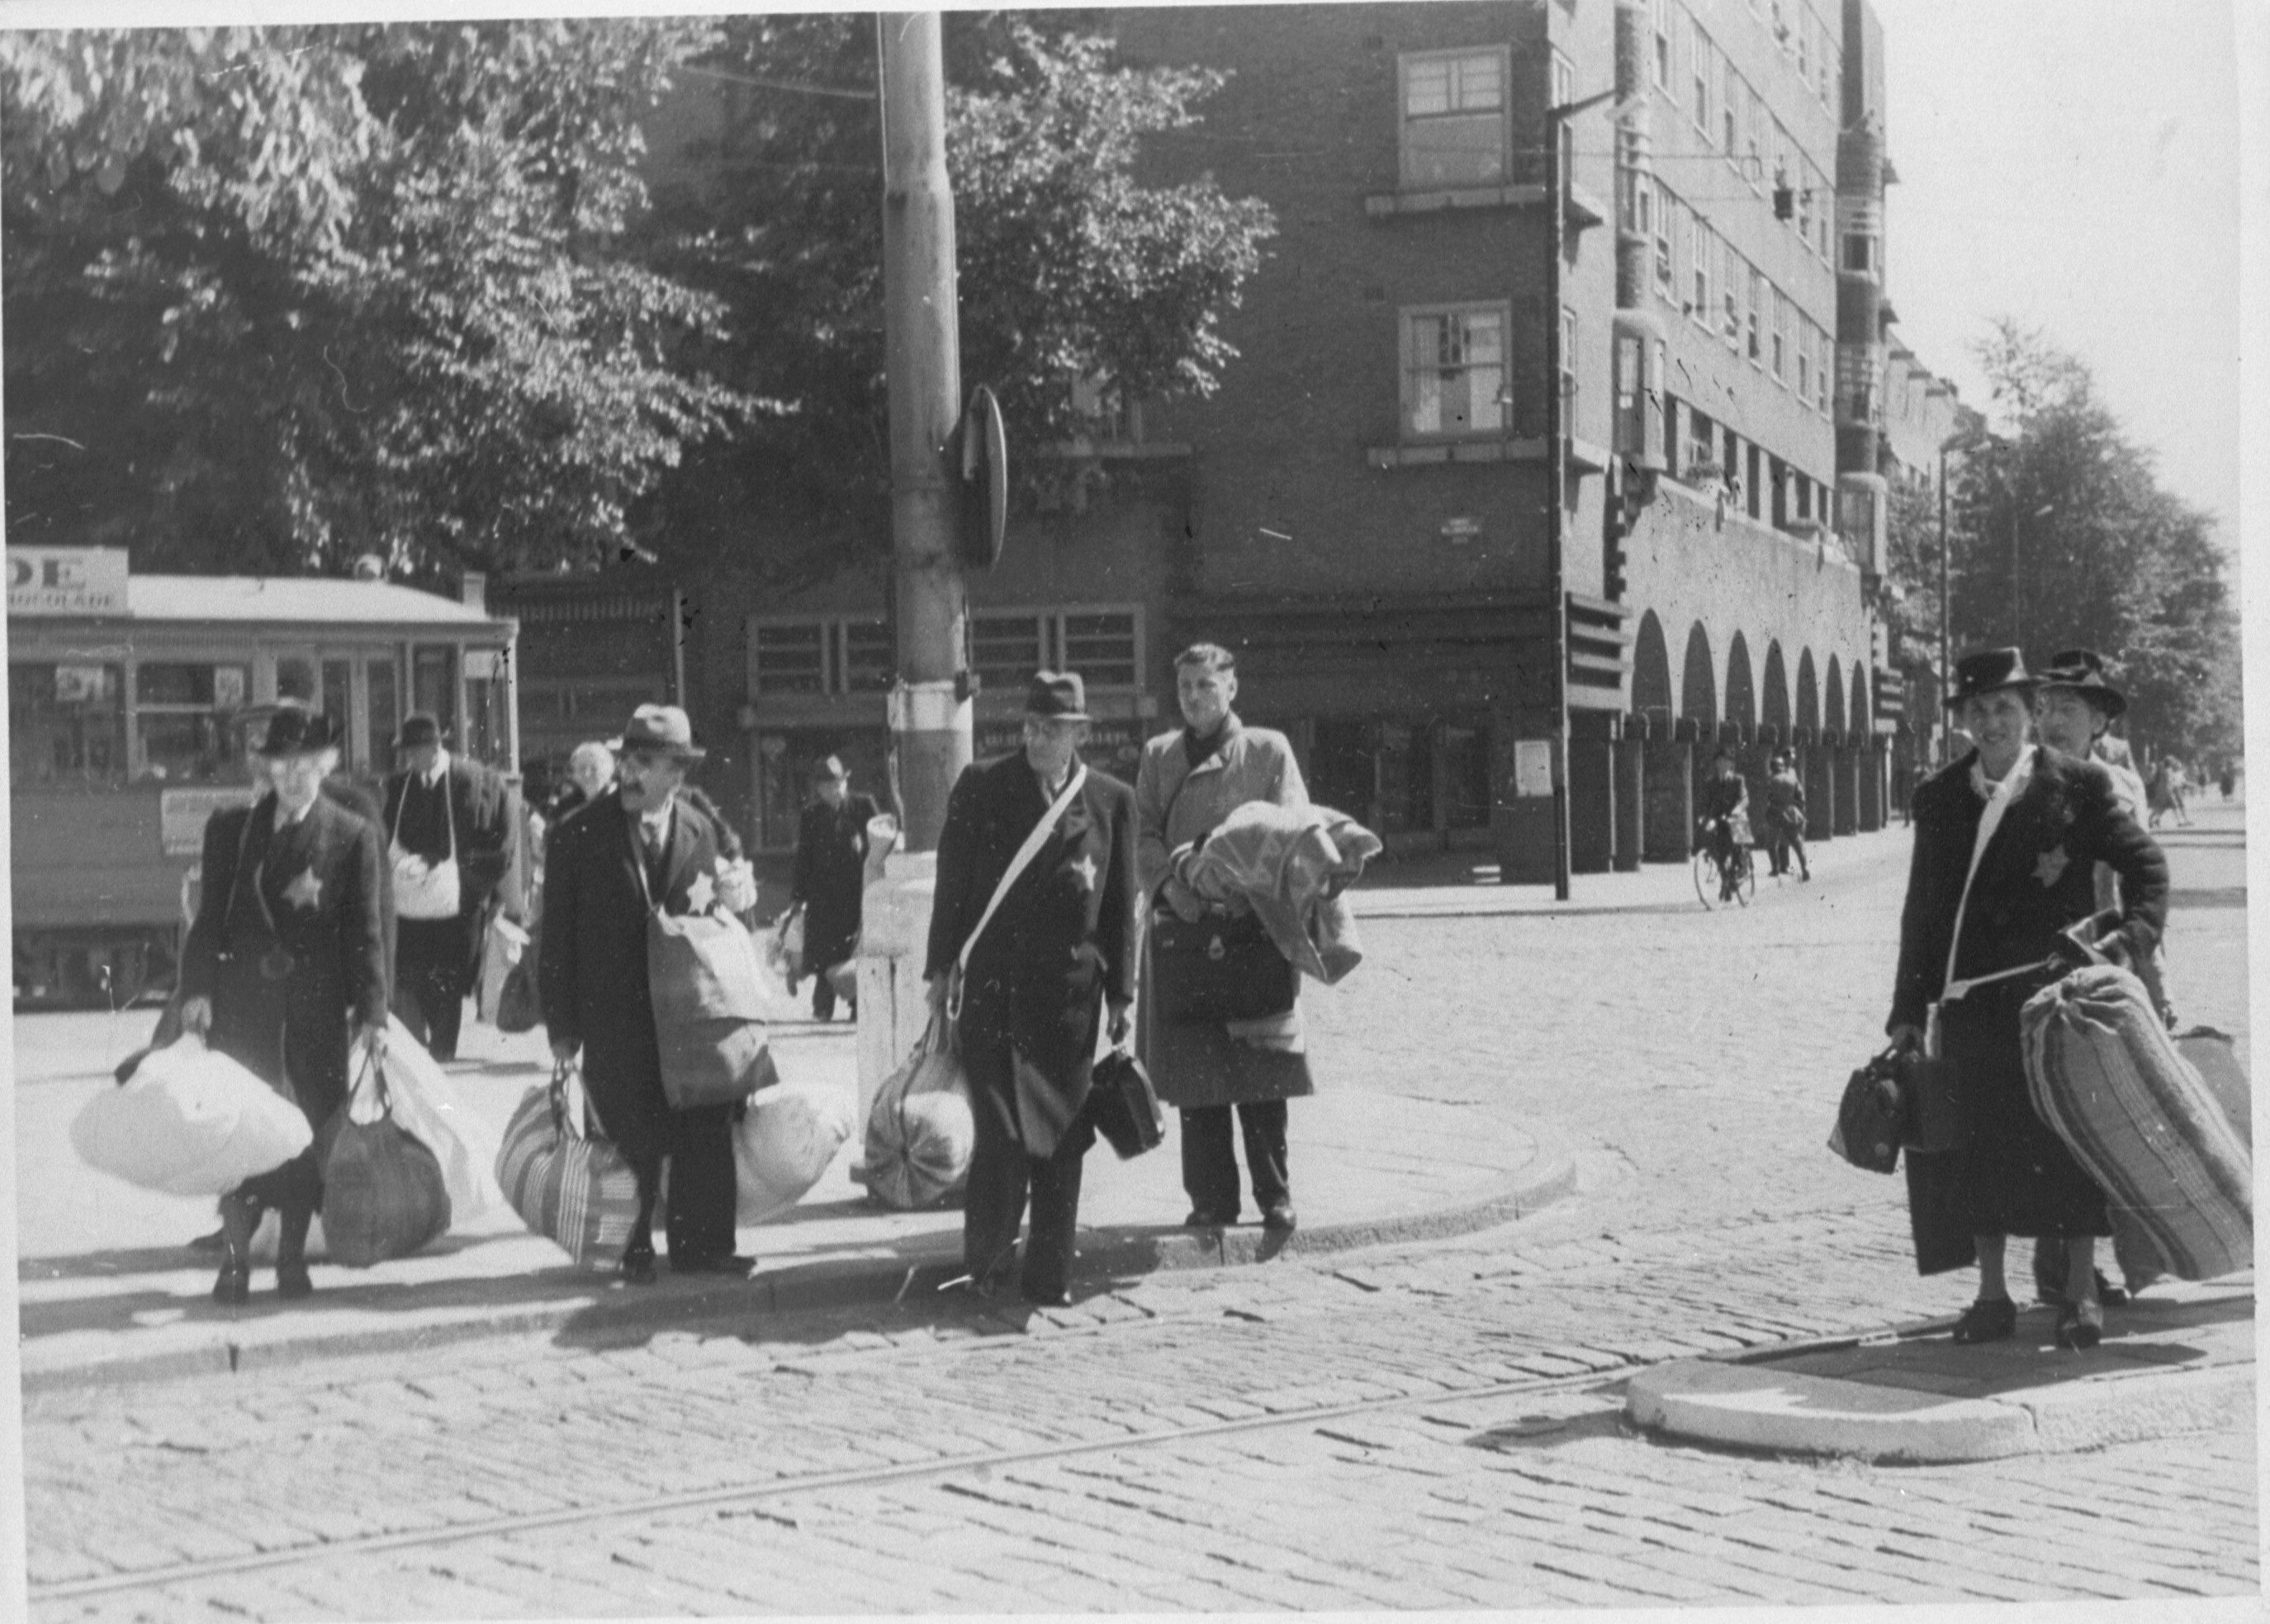 Amsterdamse joden op het Daniël Willinkplein in afwachting van deportatie naar kamp Westerbork op 20 juni 1943.